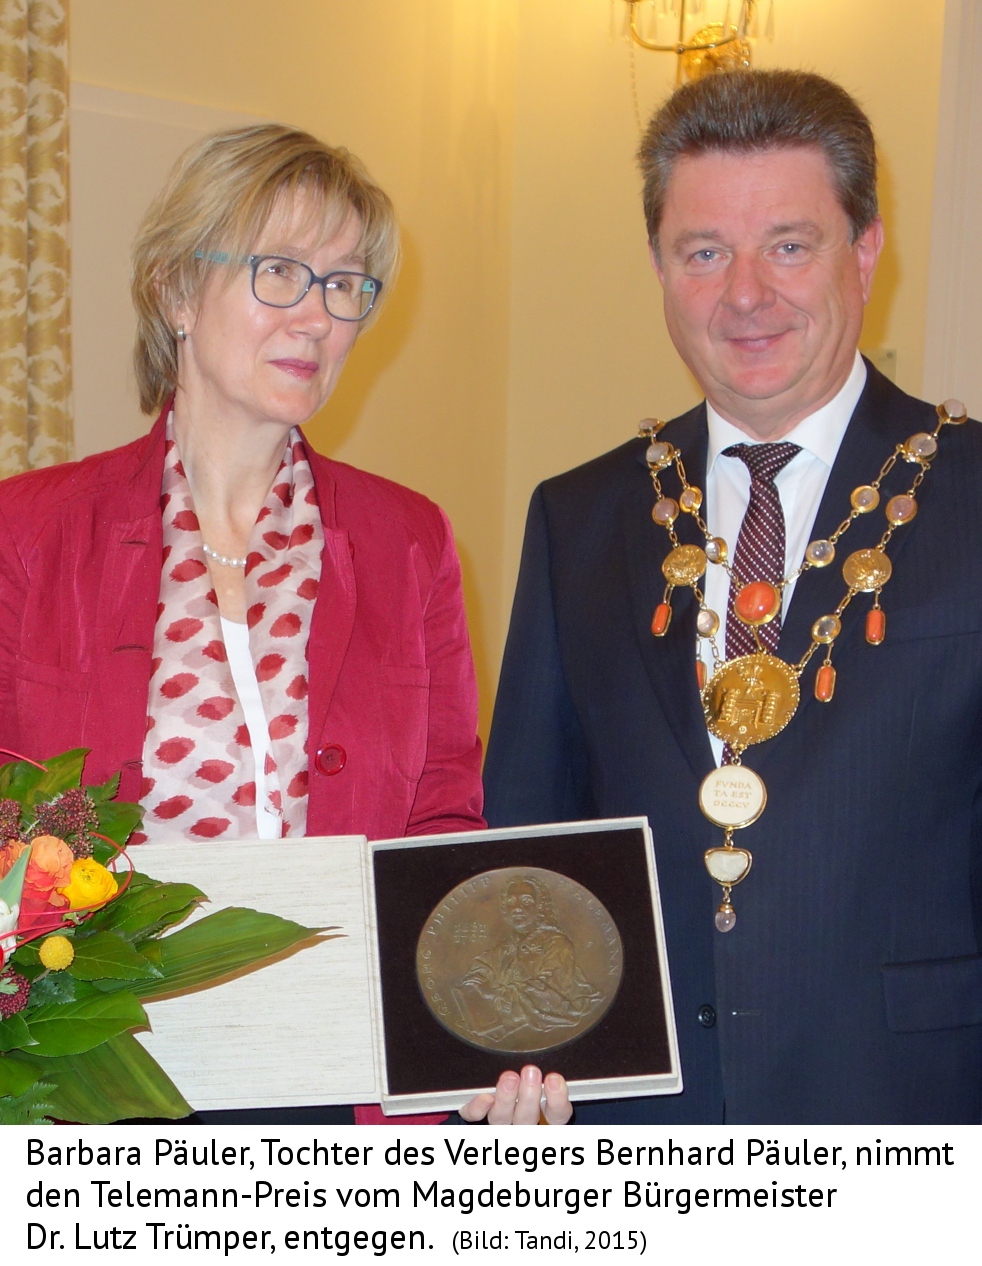 Barbara Päuler und Dr. Lutz Trümpler, Bürgermeister, Magdeburg